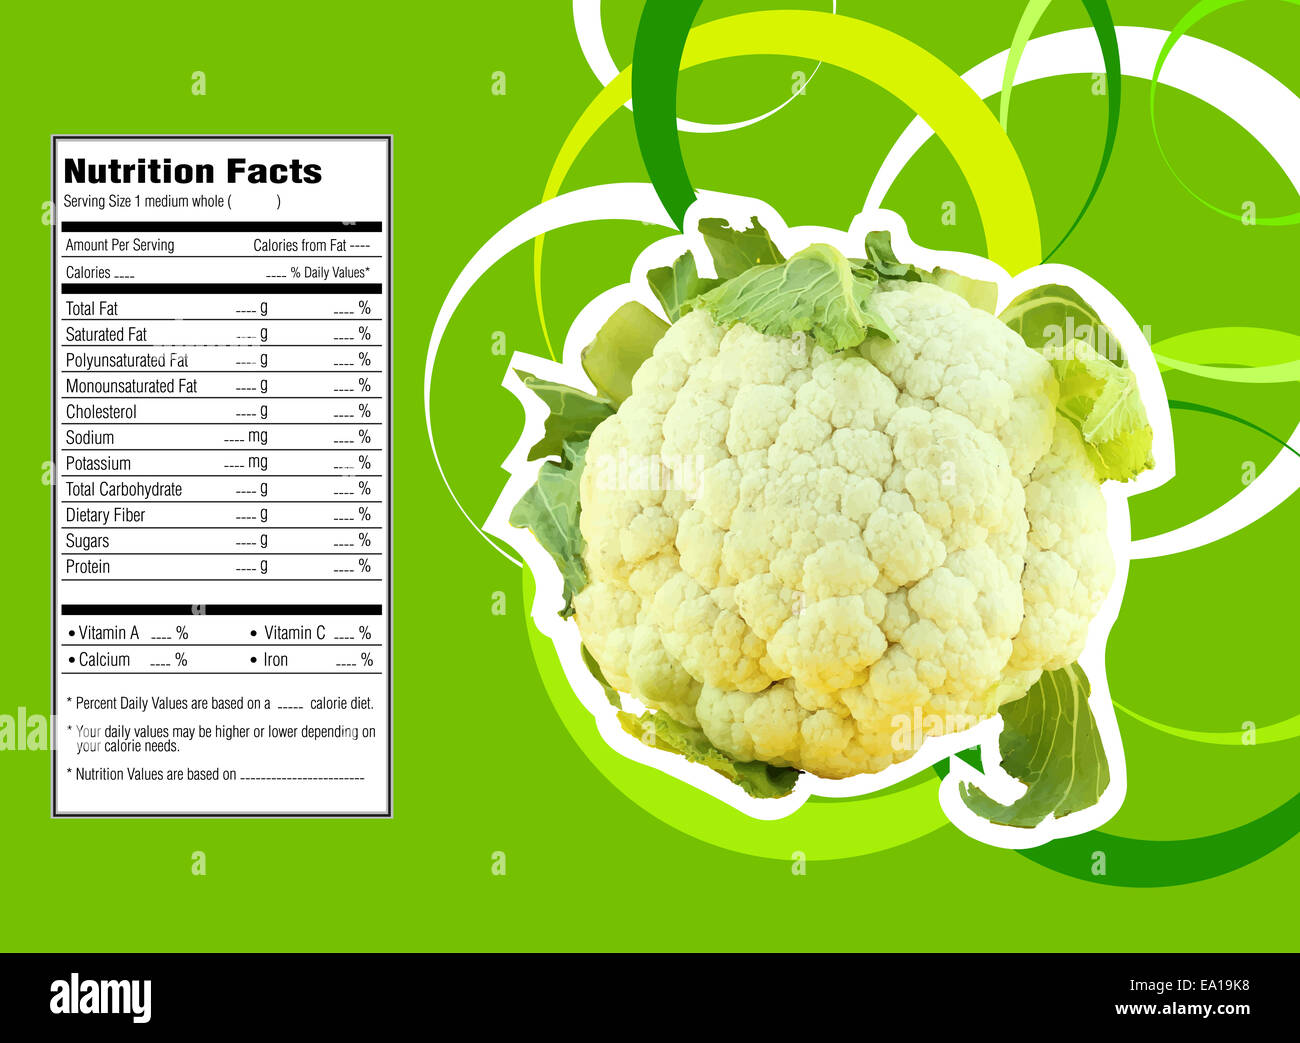 cauliflower nutrition facts 100g